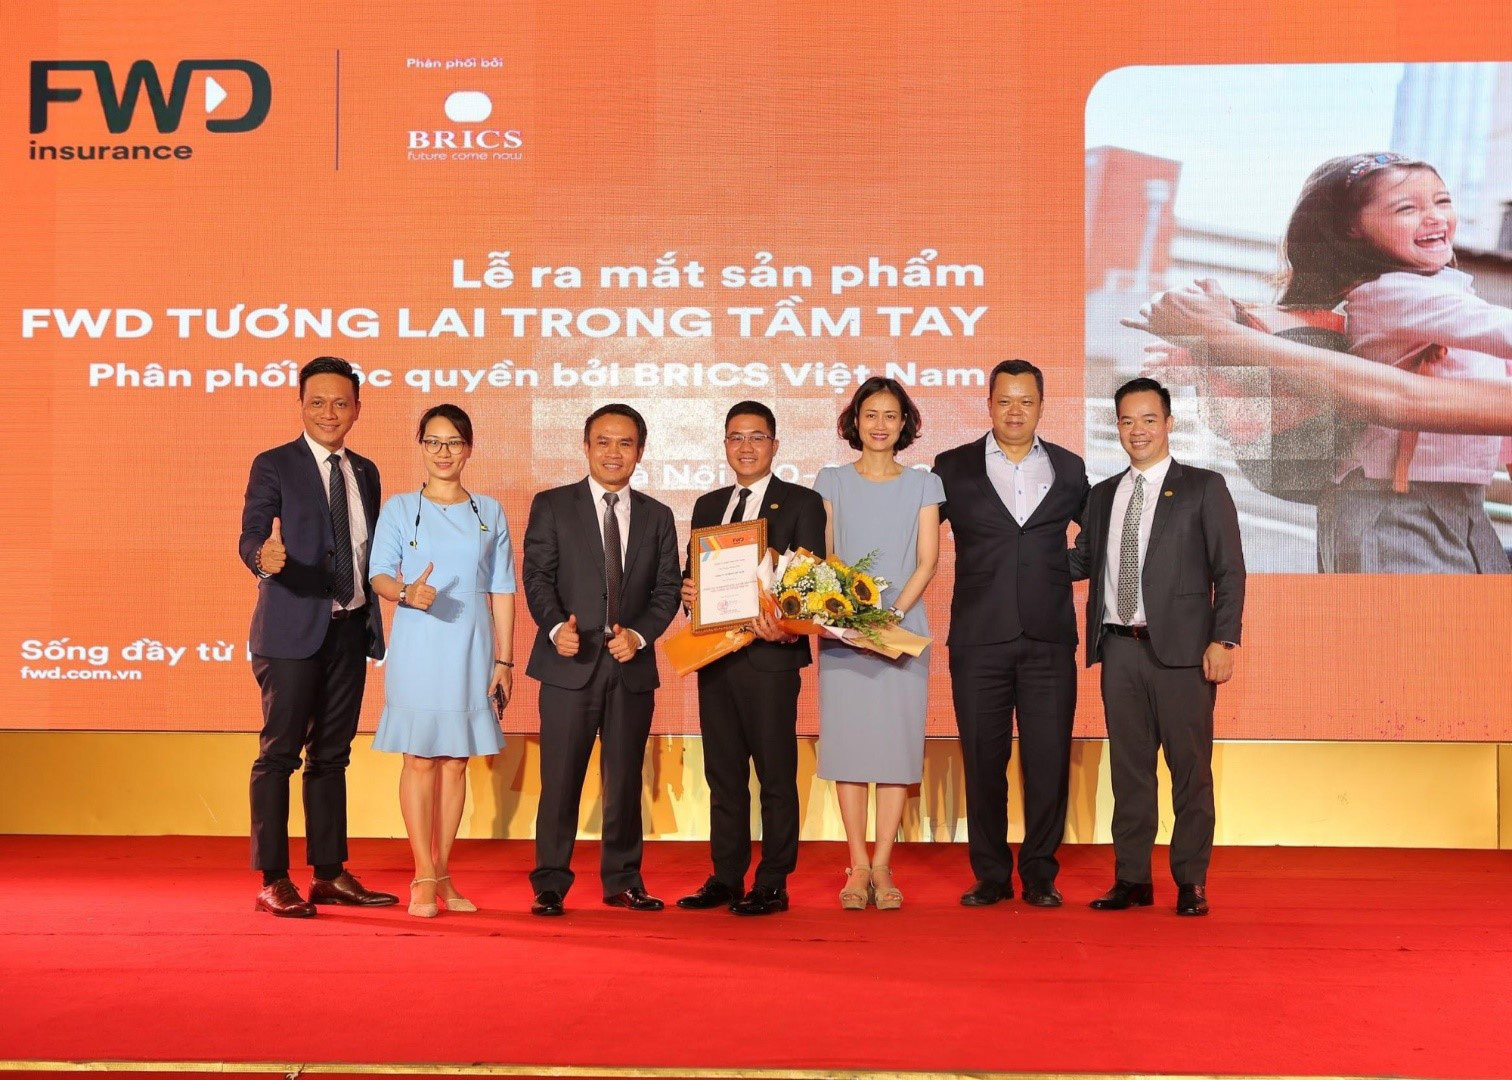 BRICS Việt Nam độc quyền phân phối sản phẩm mới của FWD - Ảnh 2.